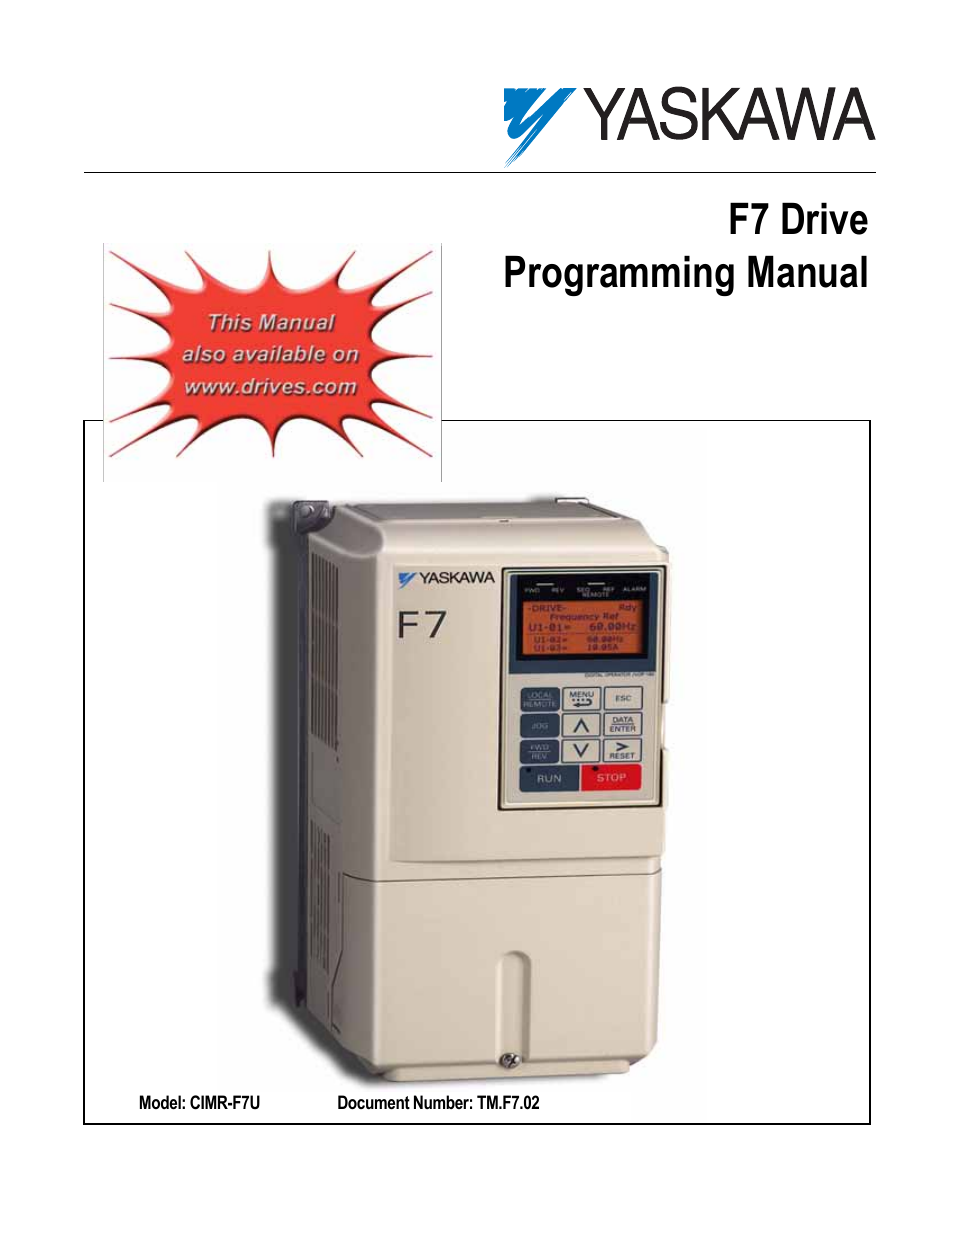 F7 Drive Programming Manual